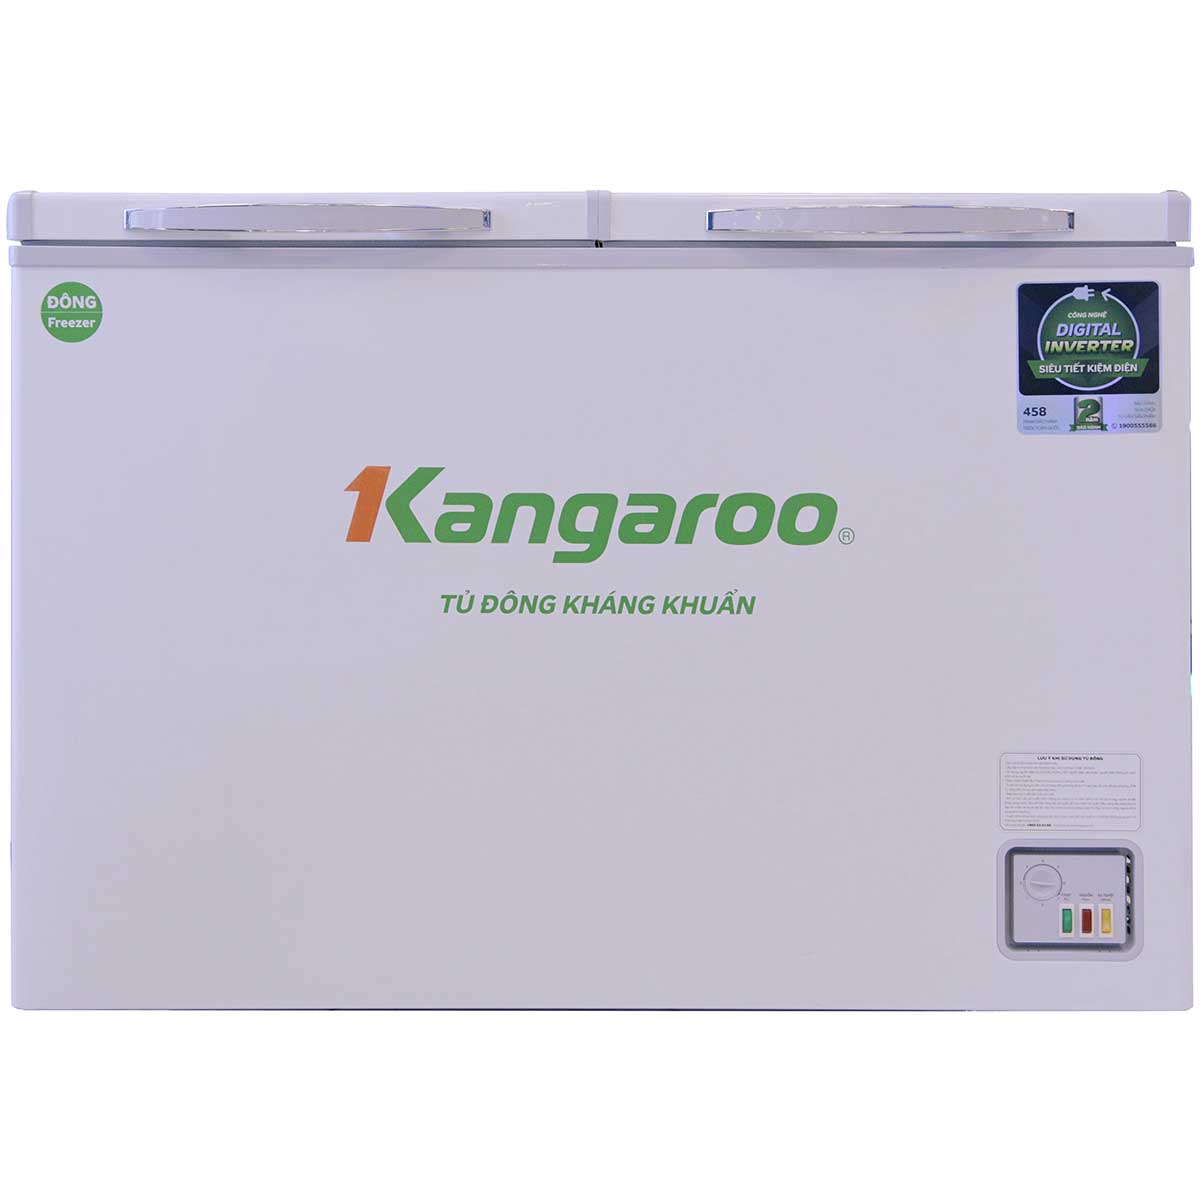 Tủ Đông Kangaroo Inverter 399 Lít Kg399Ic1 Chính Hãng Giá Kho Tại Tín Phát